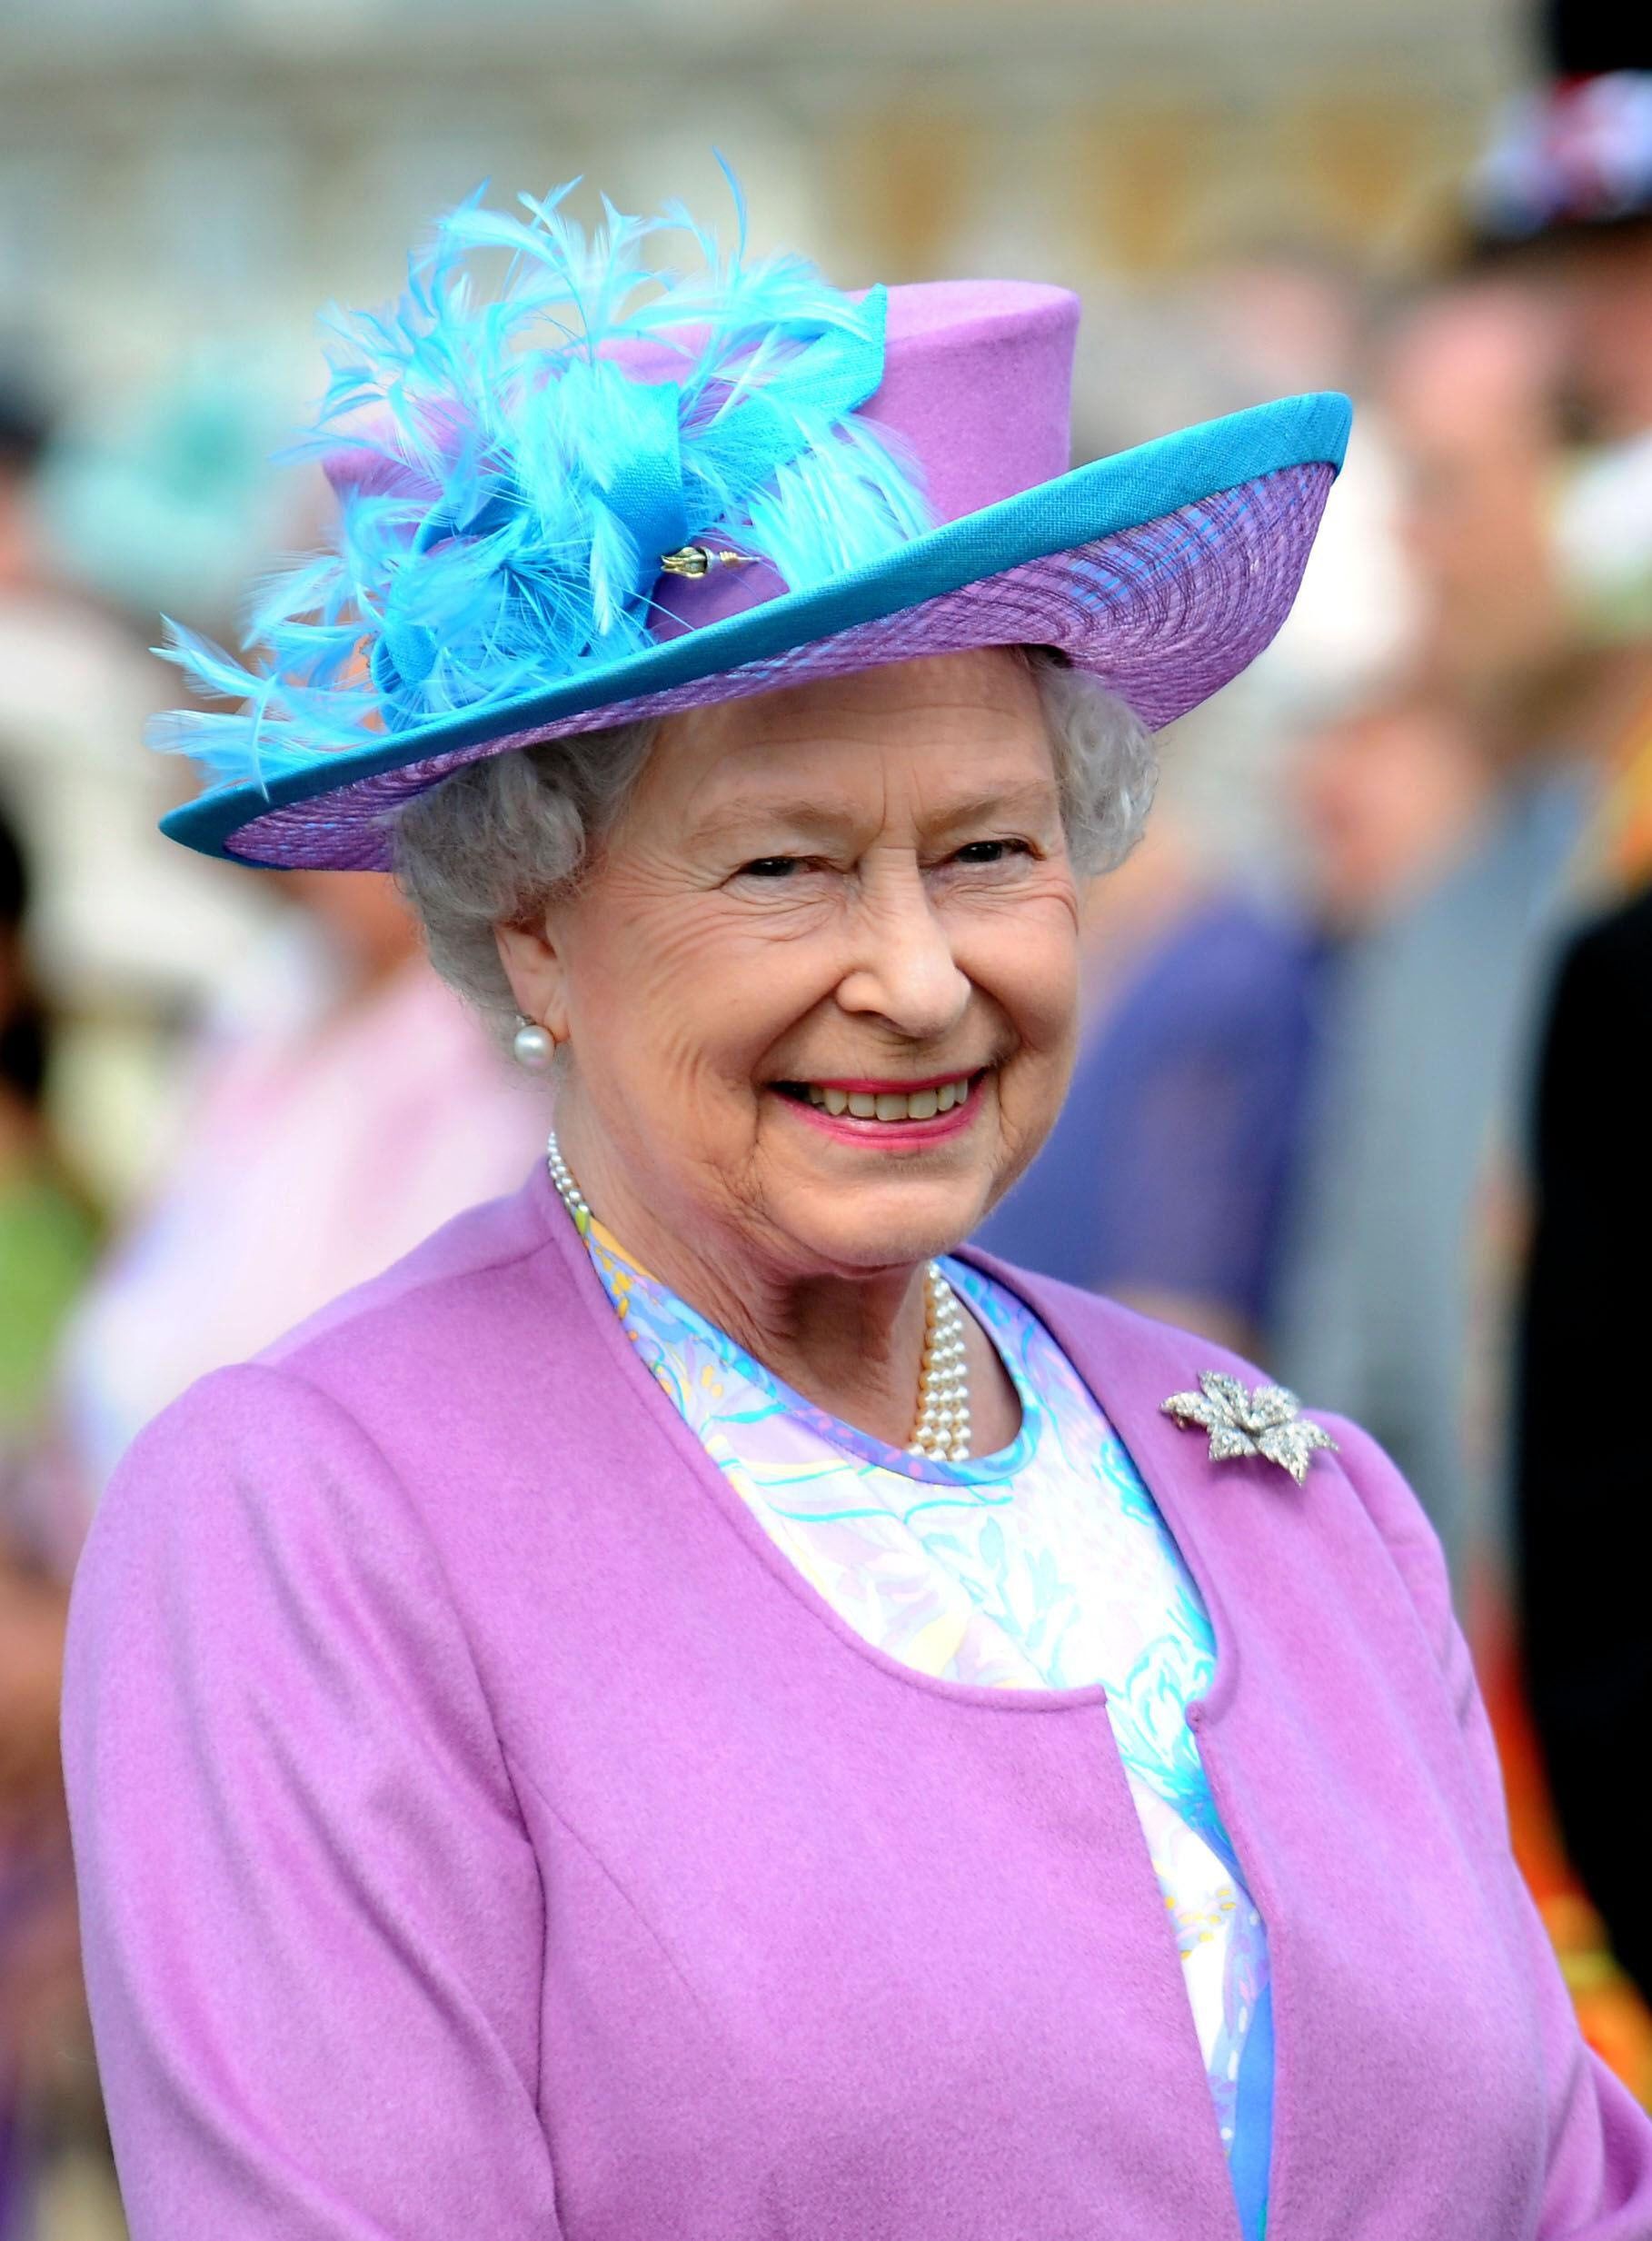 Nữ hoàng Anh Elizabeth II